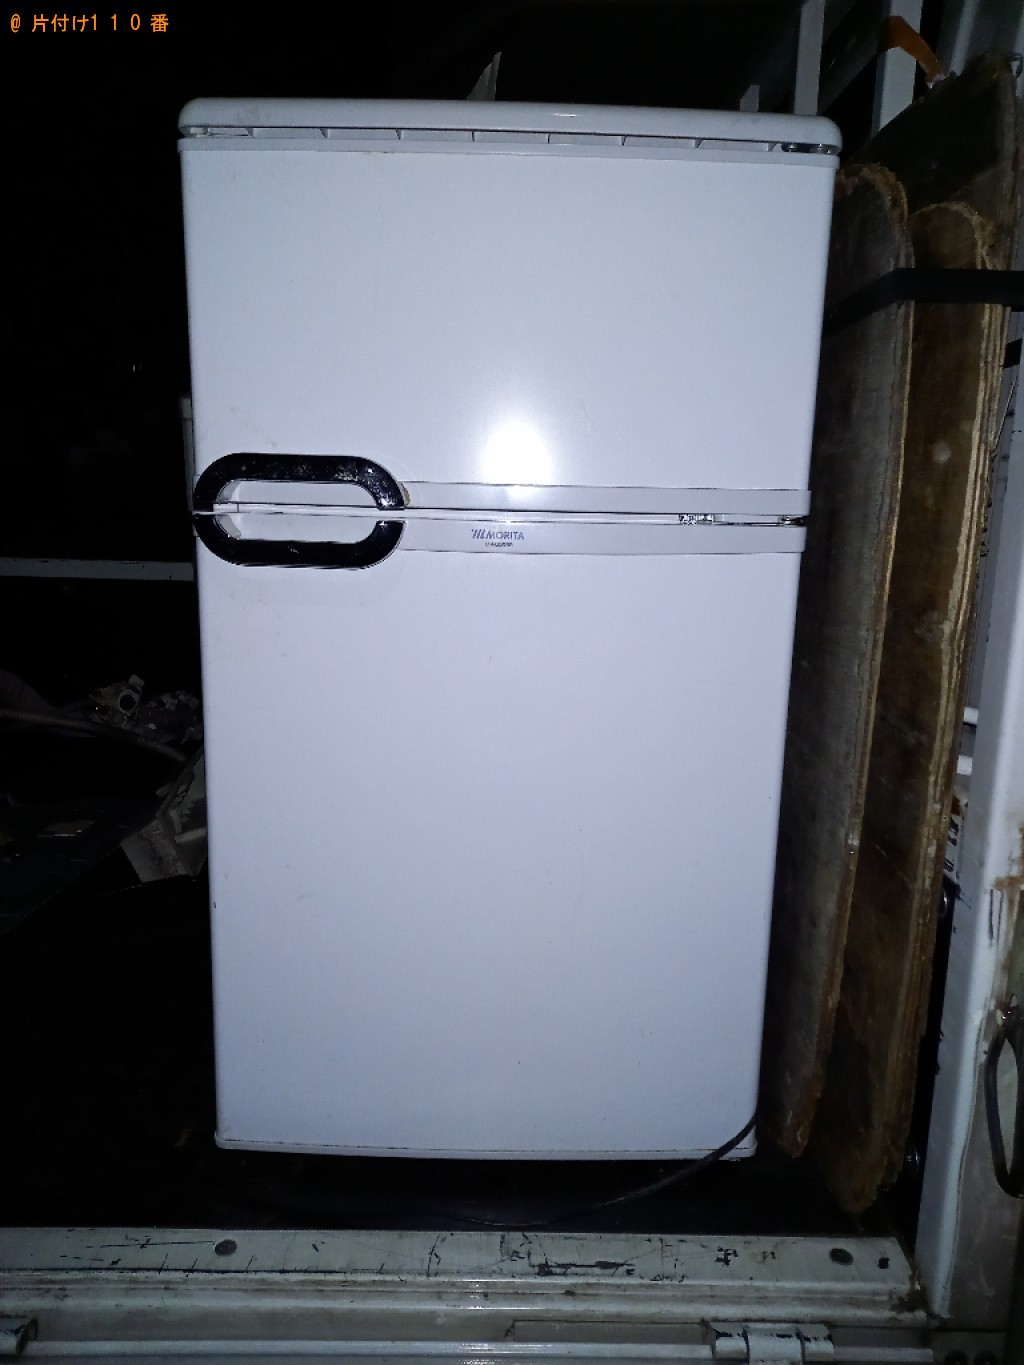 【練馬区】170L未満冷蔵庫の出張不用品回収・処分ご依頼